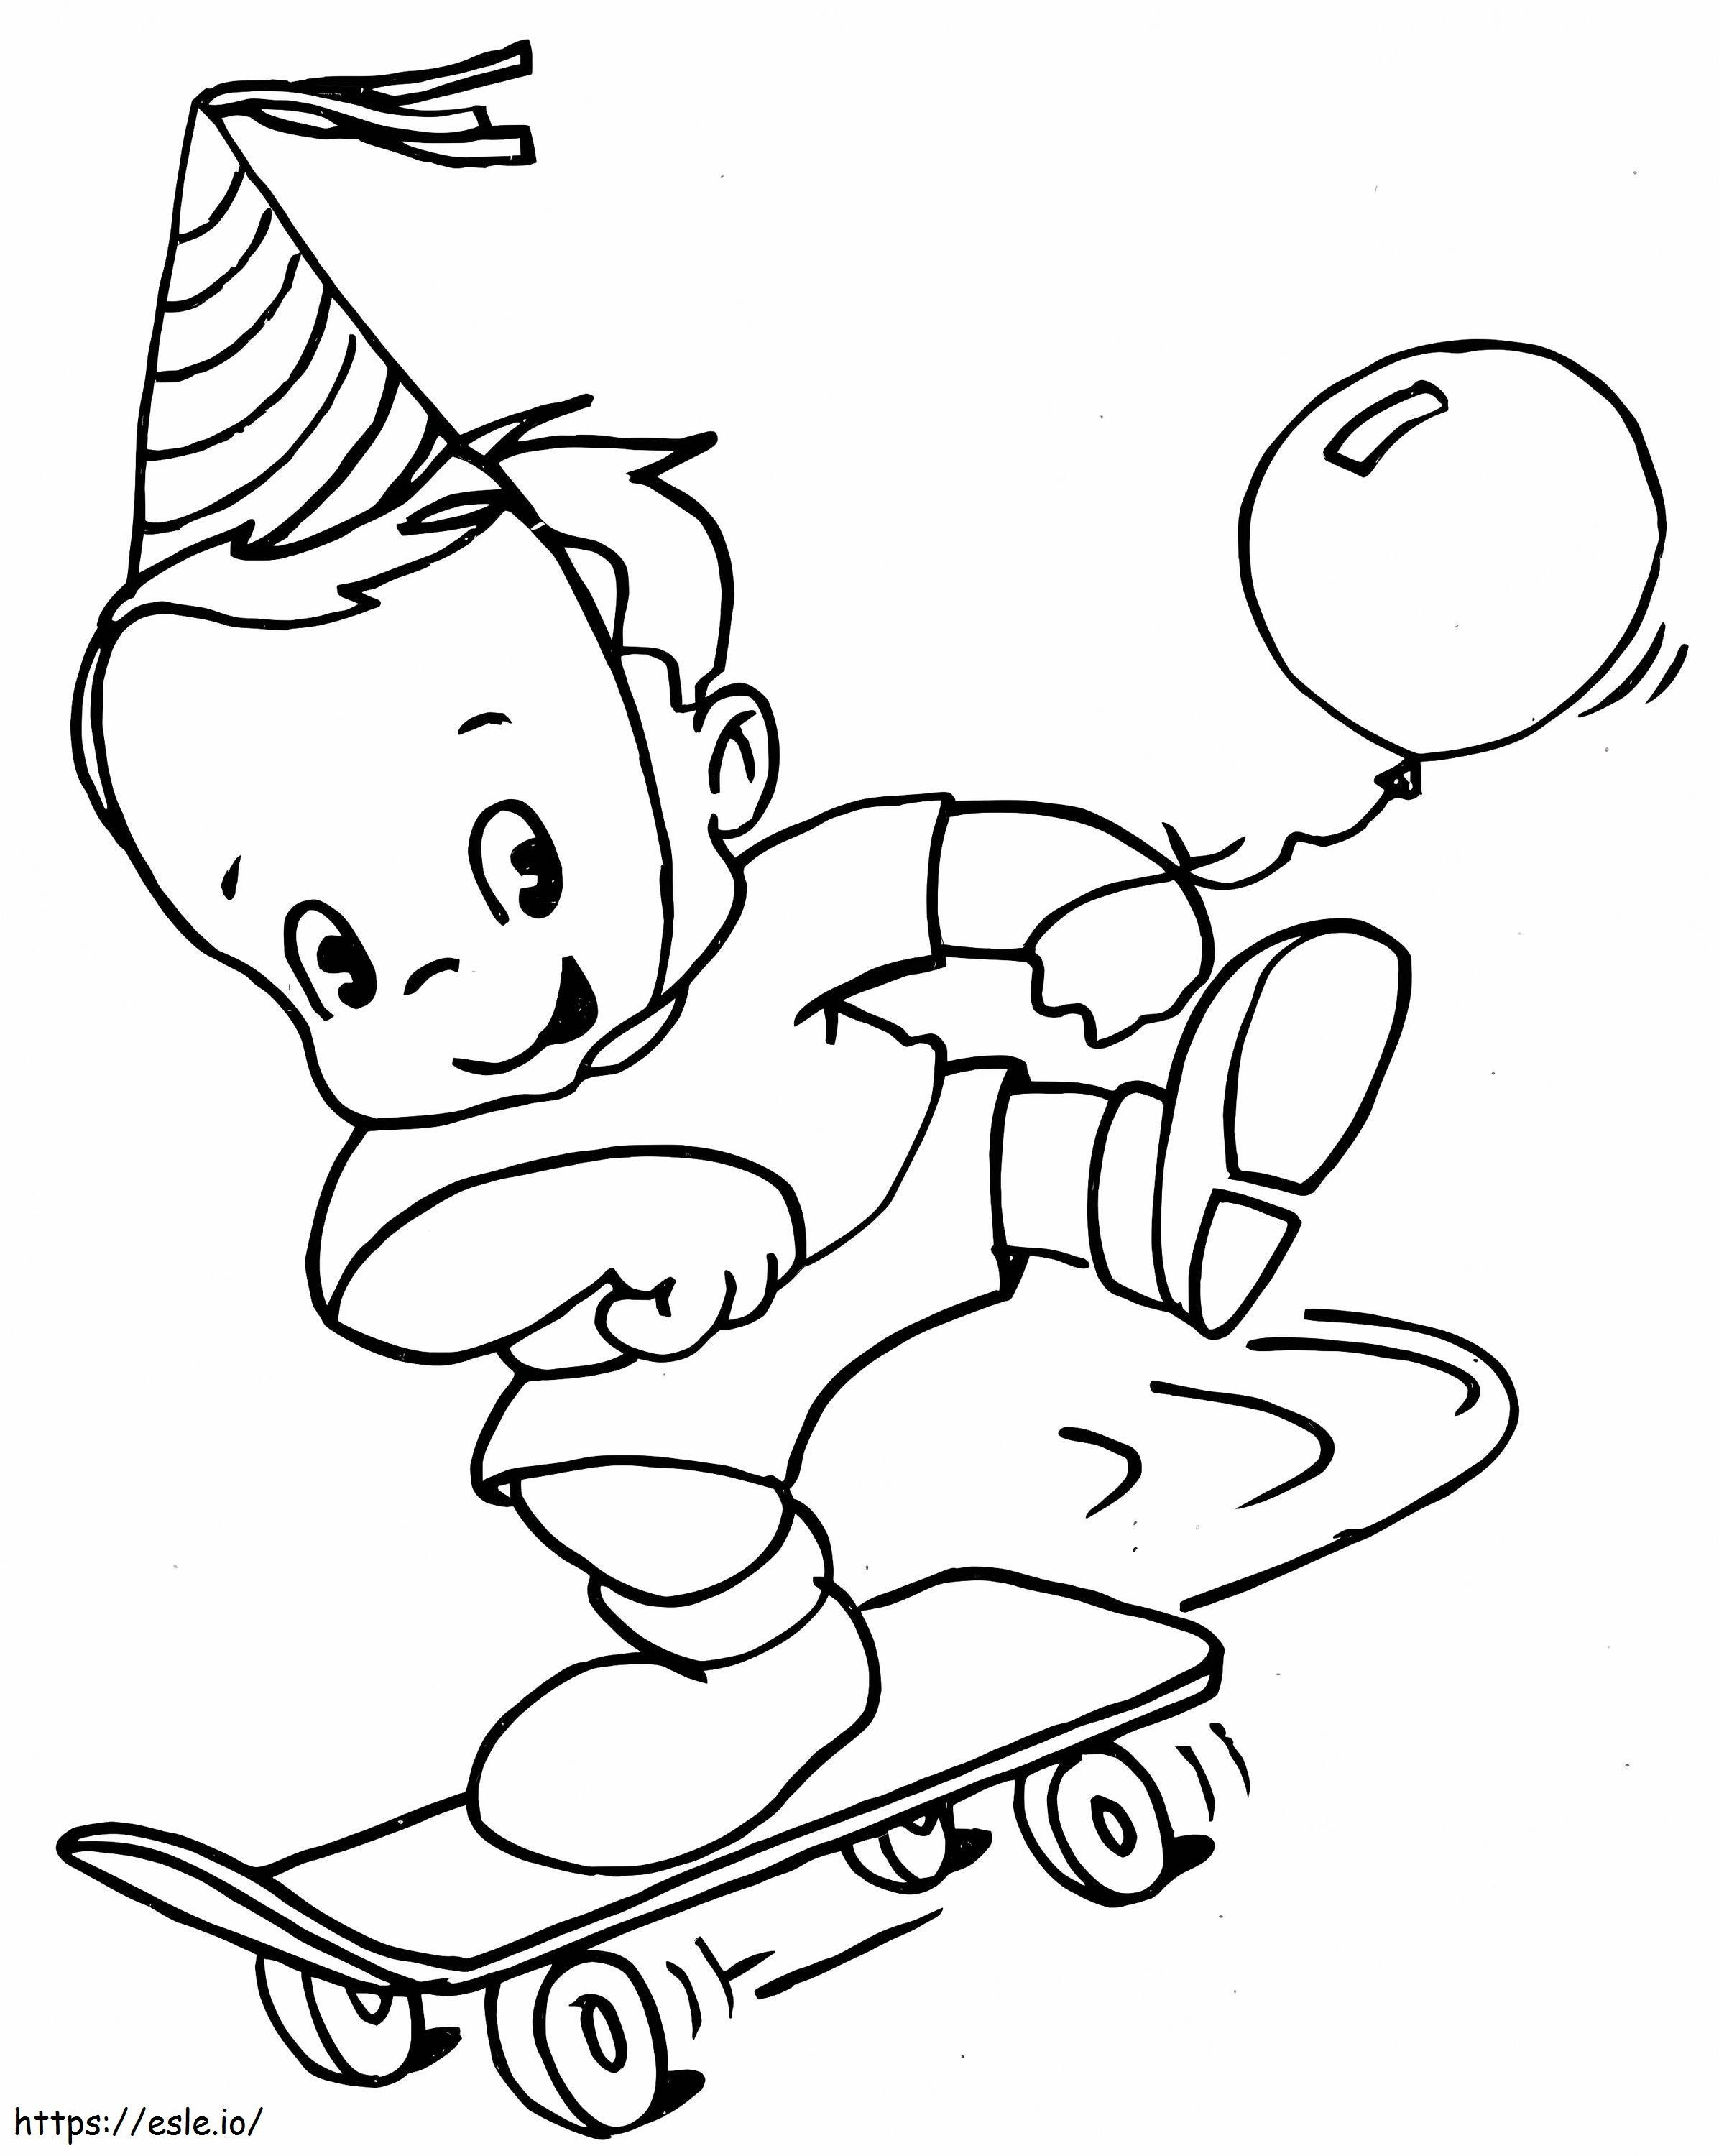 Ein Junge mit einem Skateboard ausmalbilder